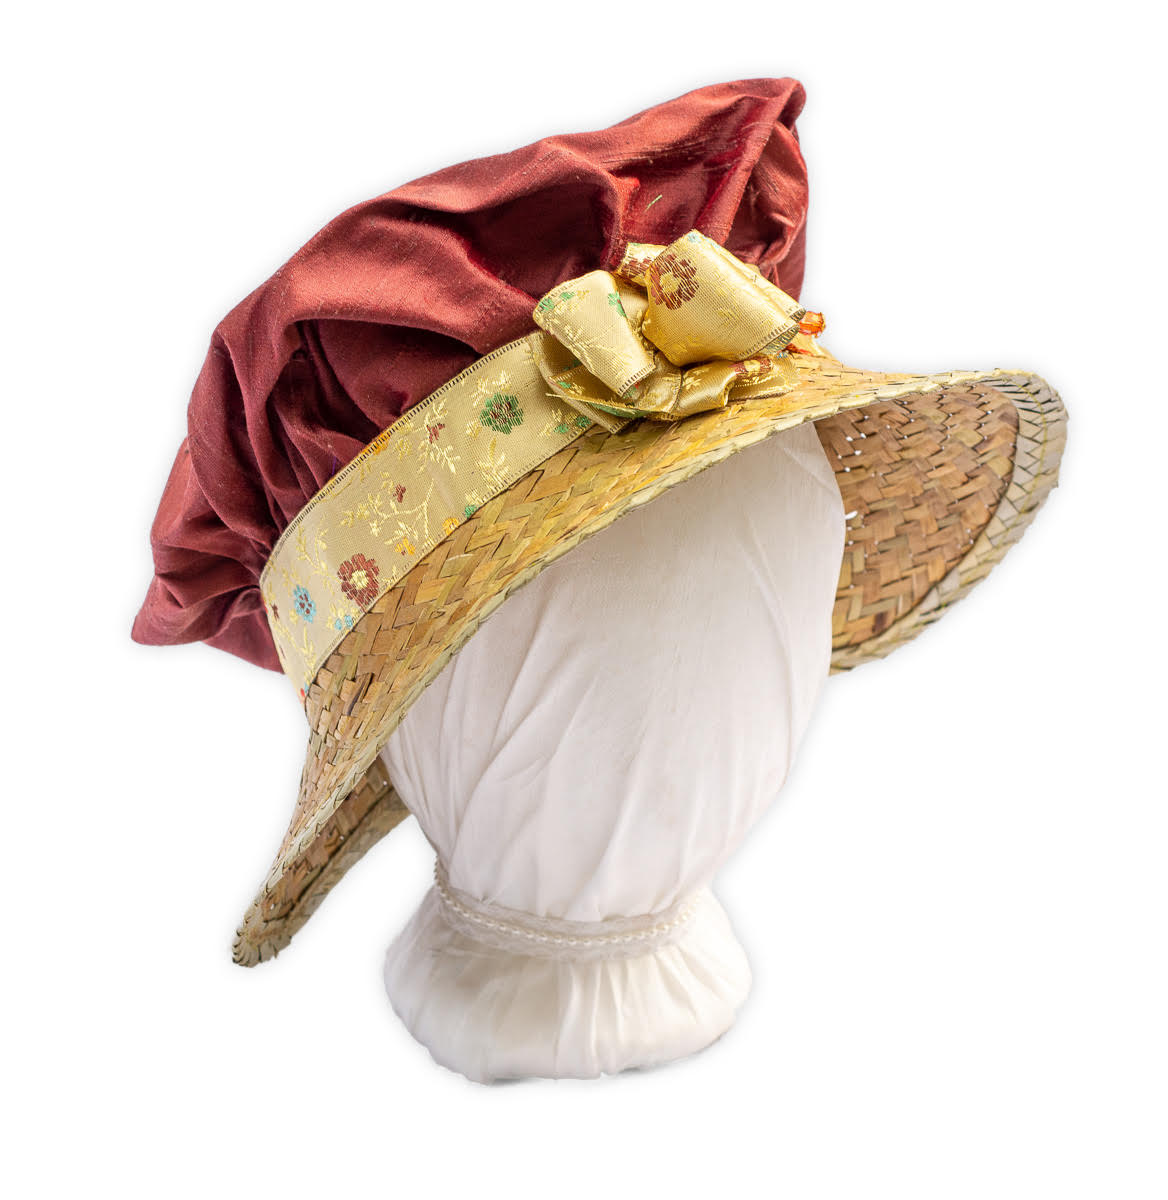 Regency Hat: Marianne